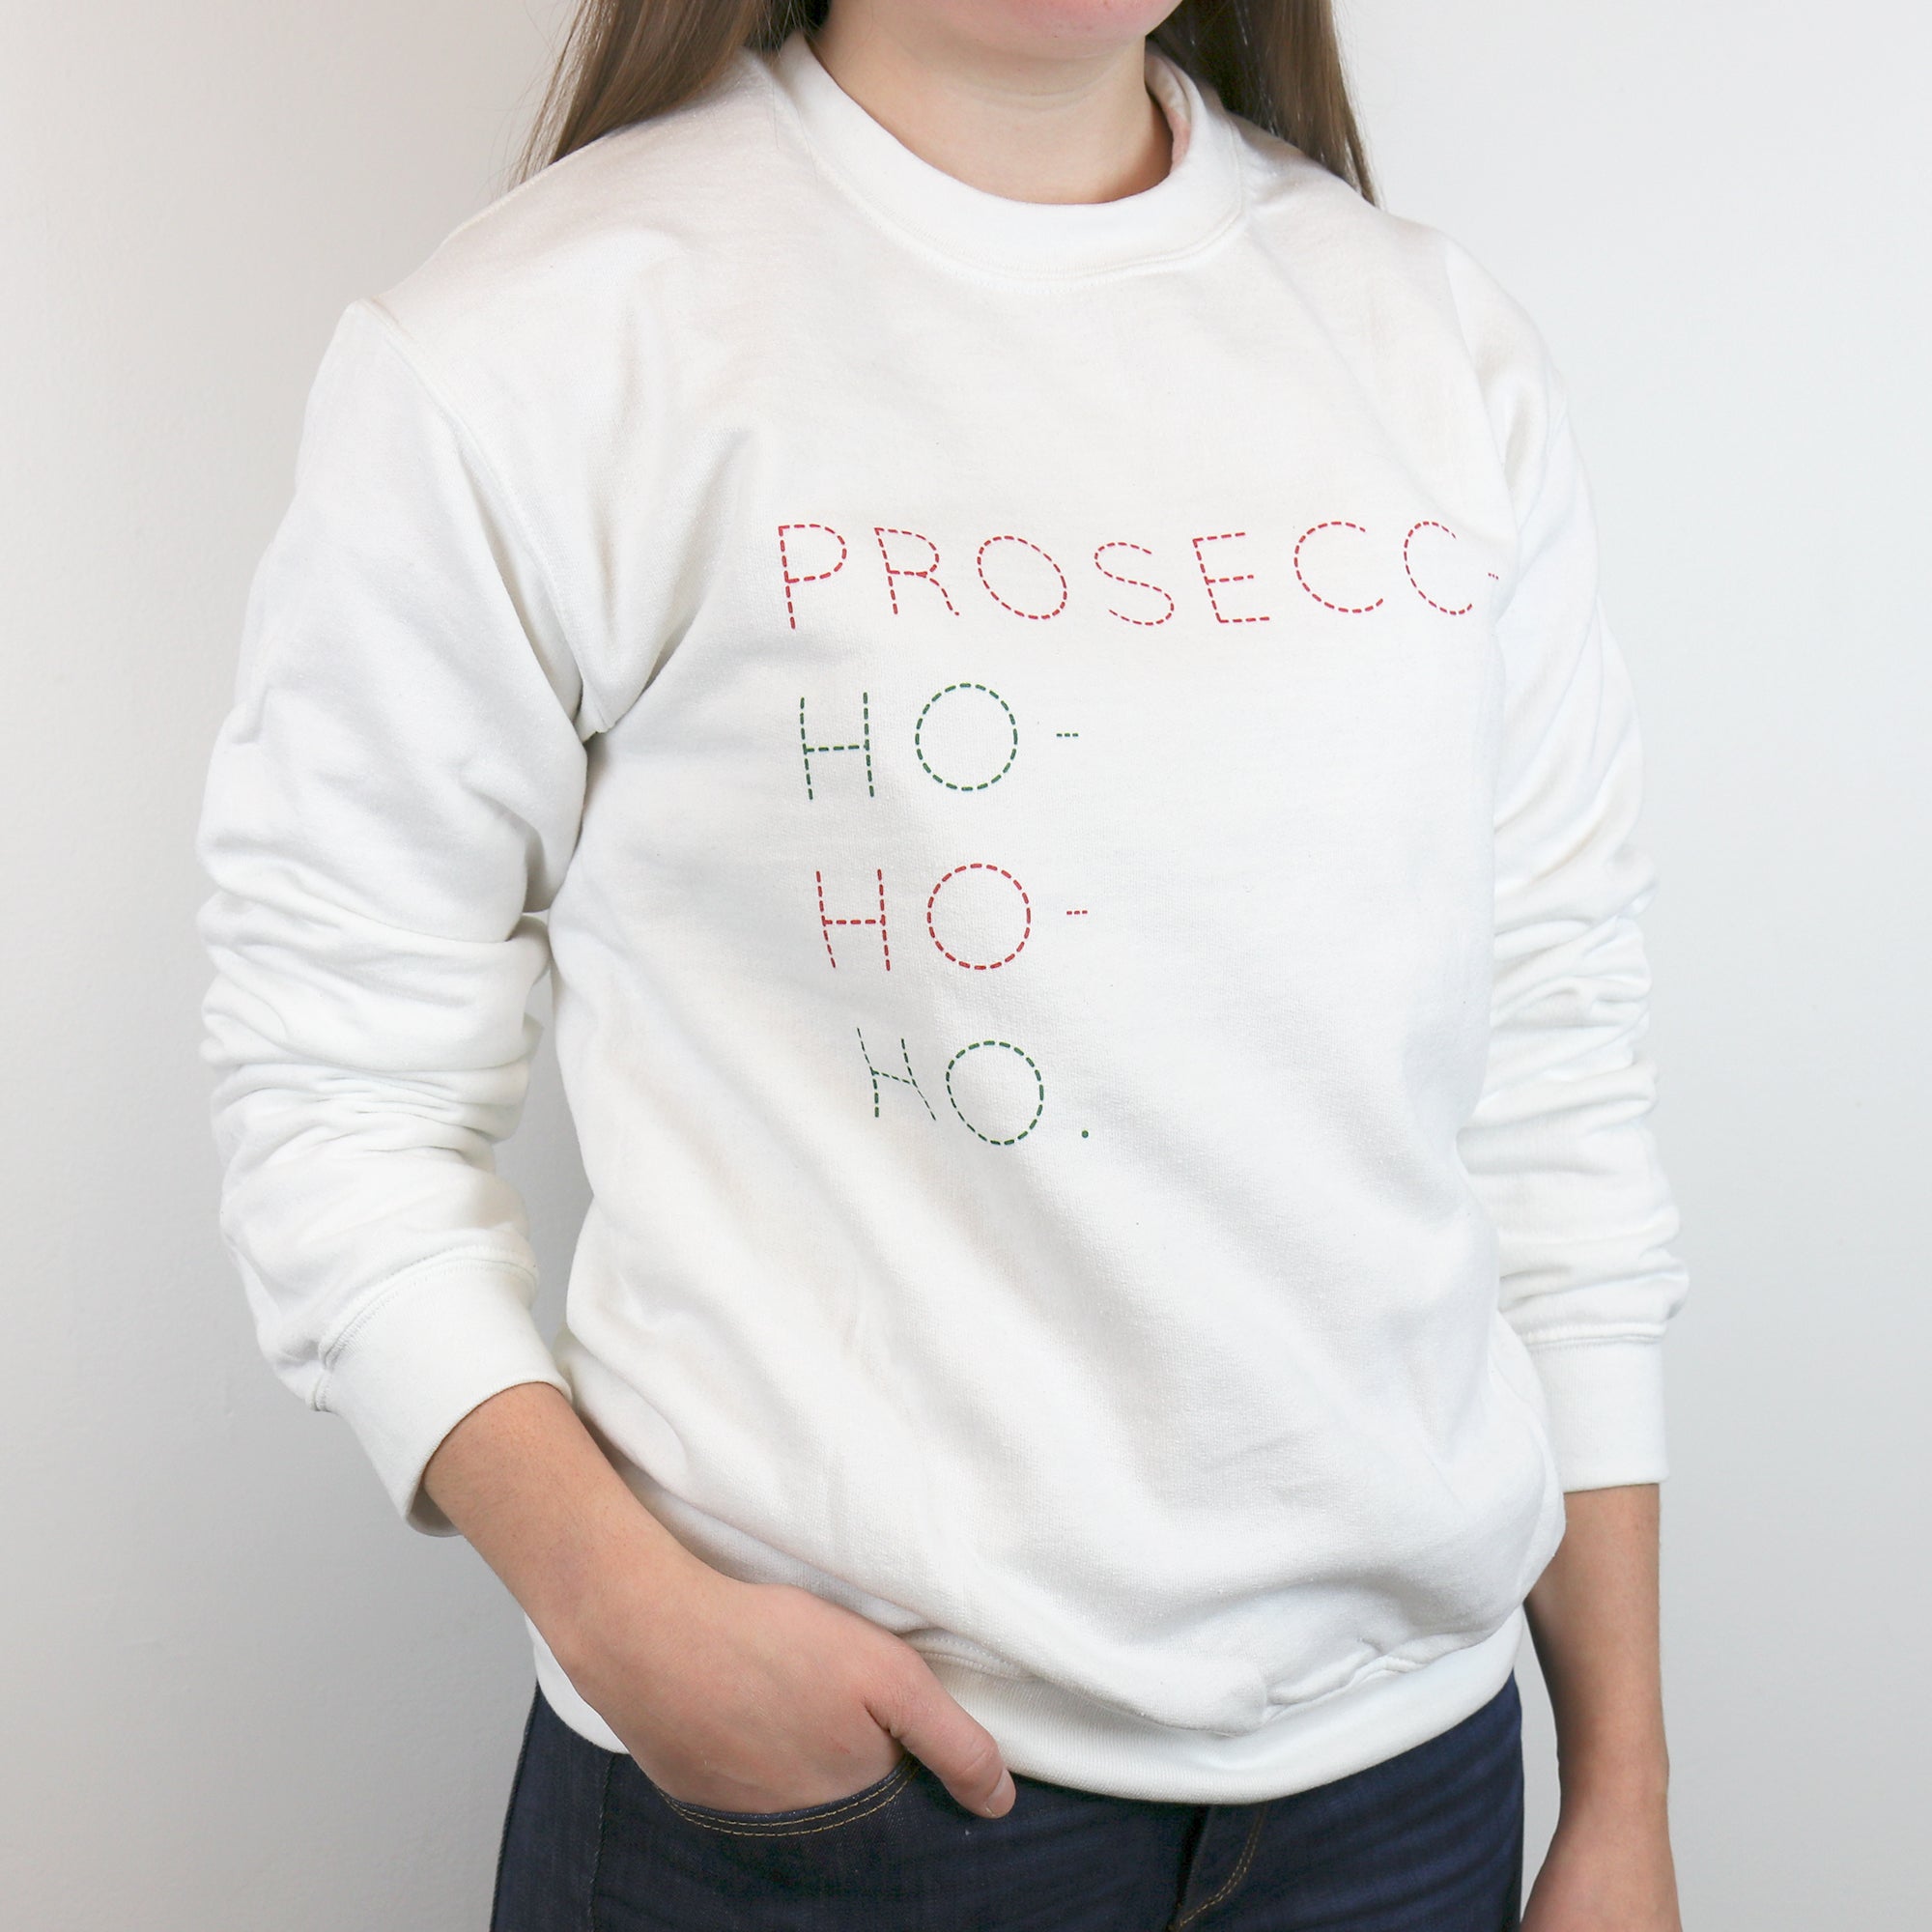 Prosecc-ho-ho-ho! Sweatshirt